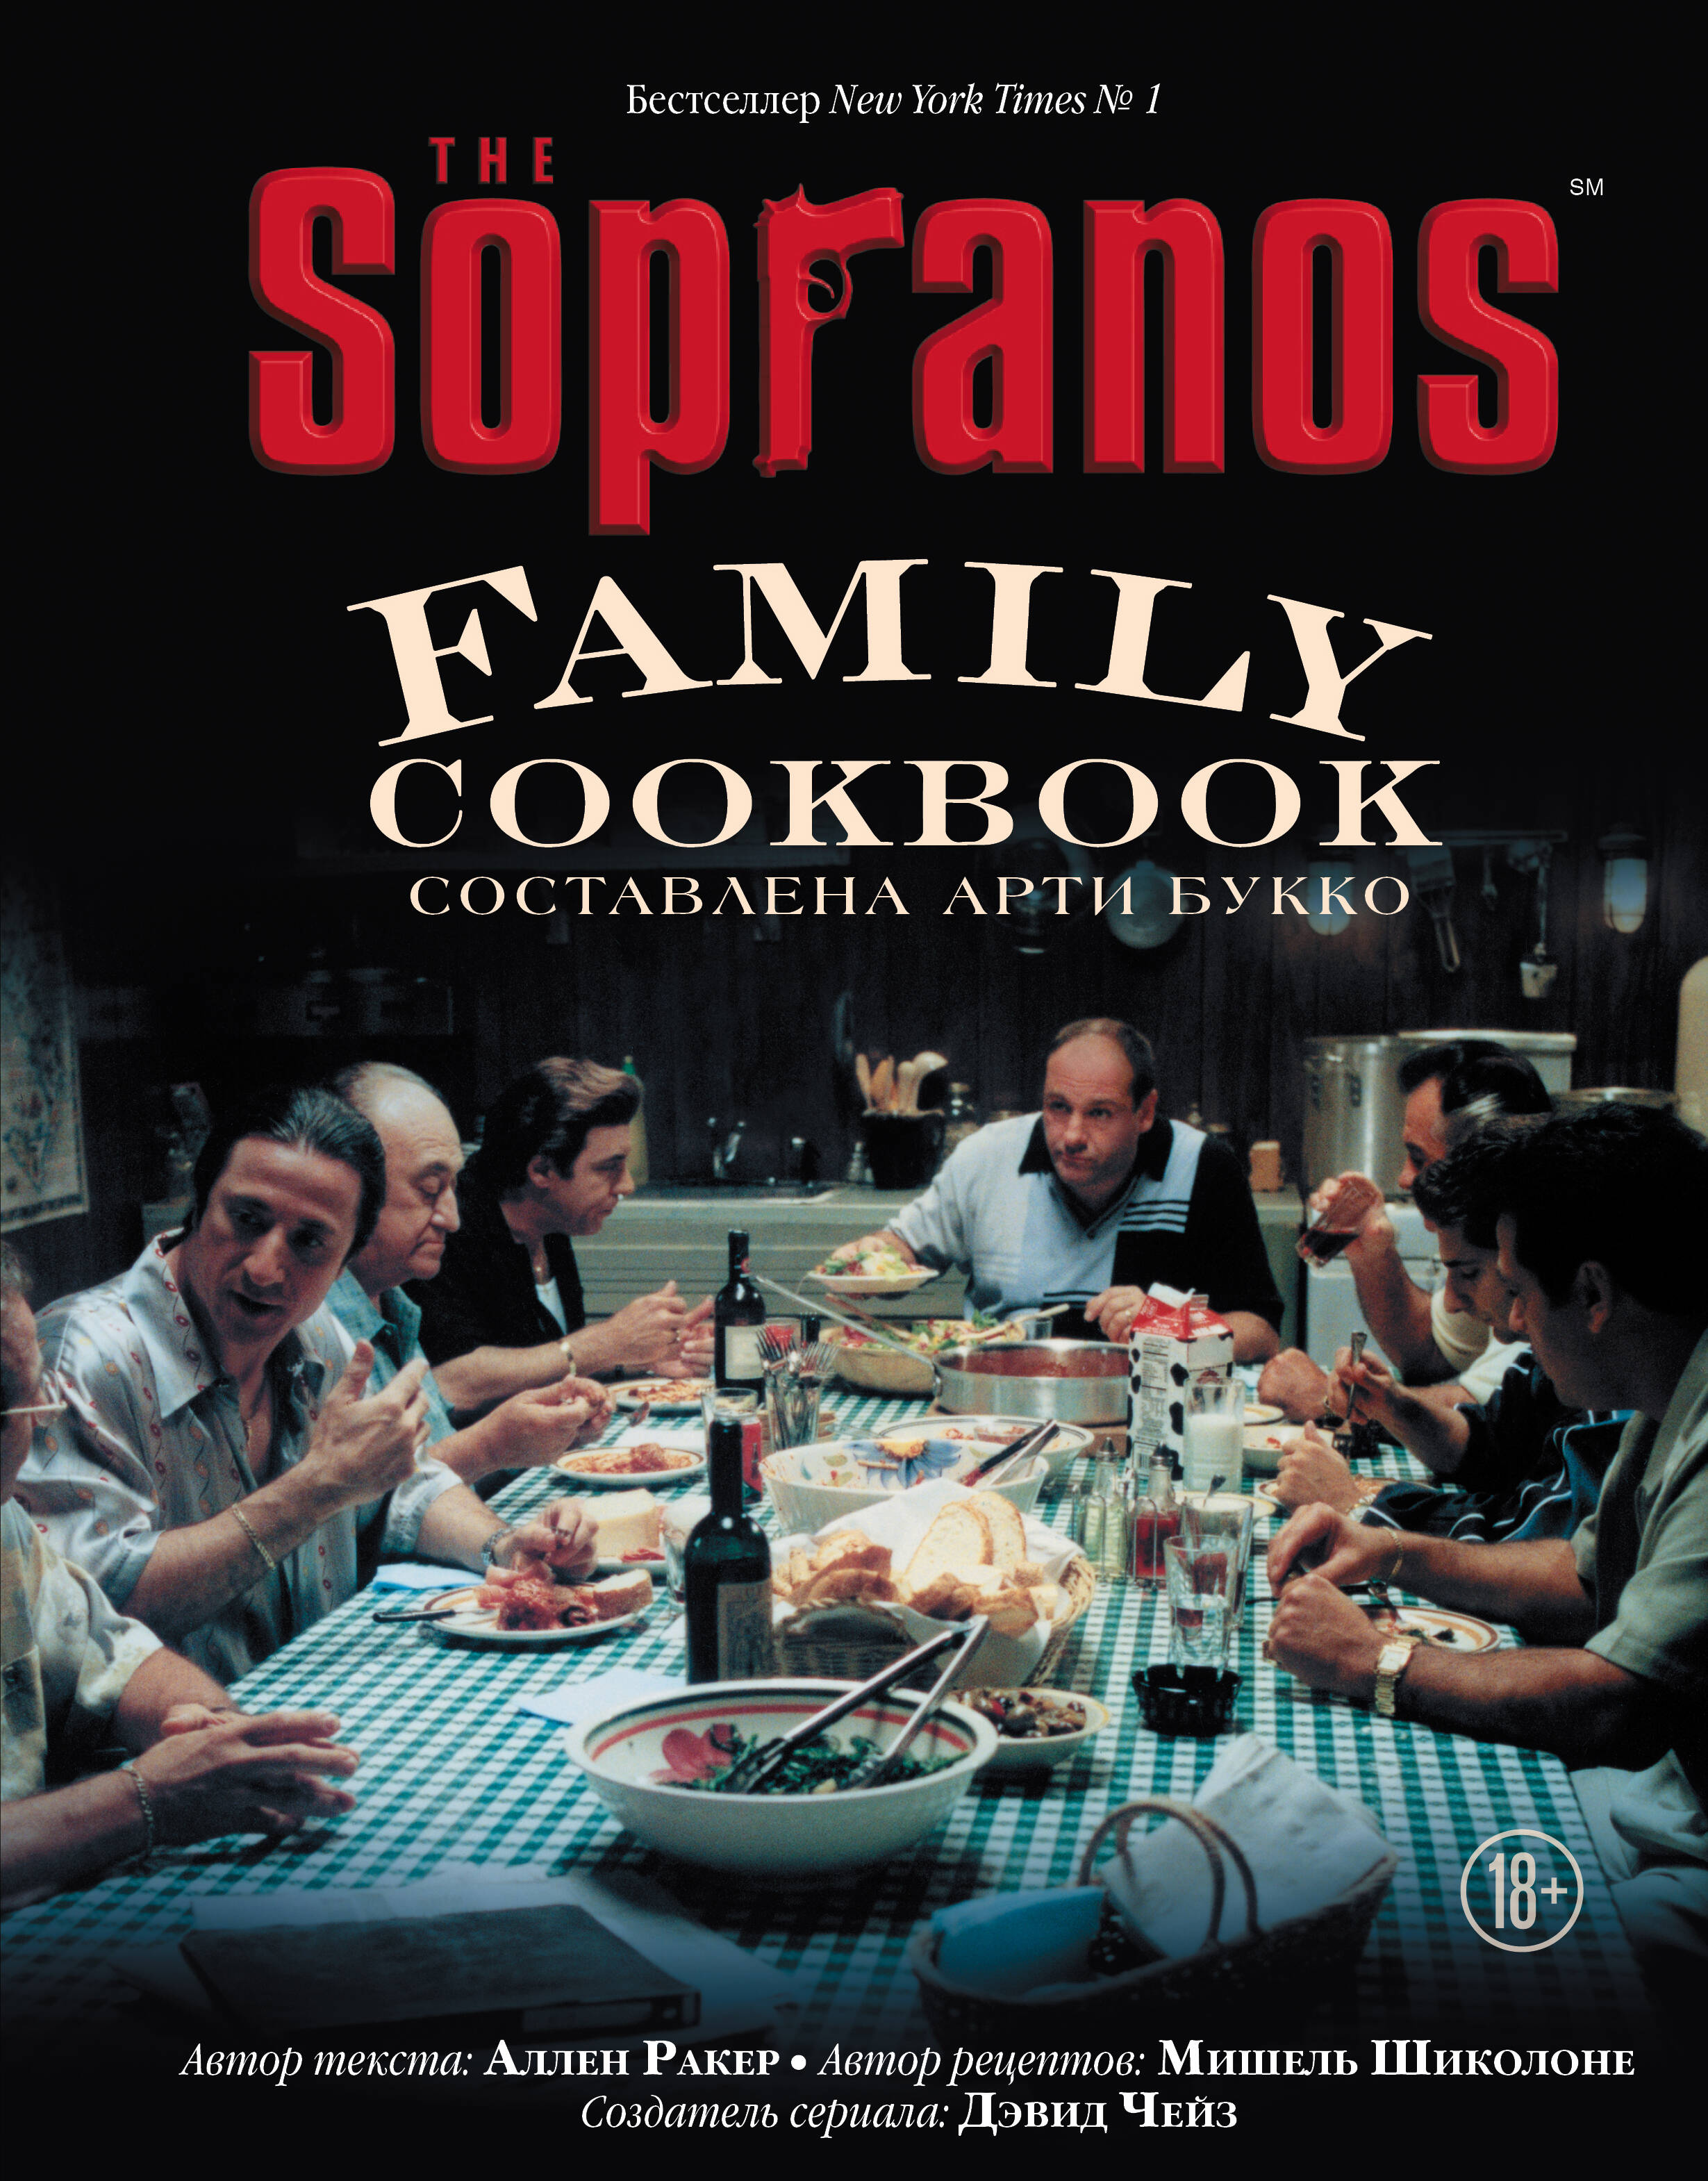 Букко Арти The Sopranos Family Cookbook